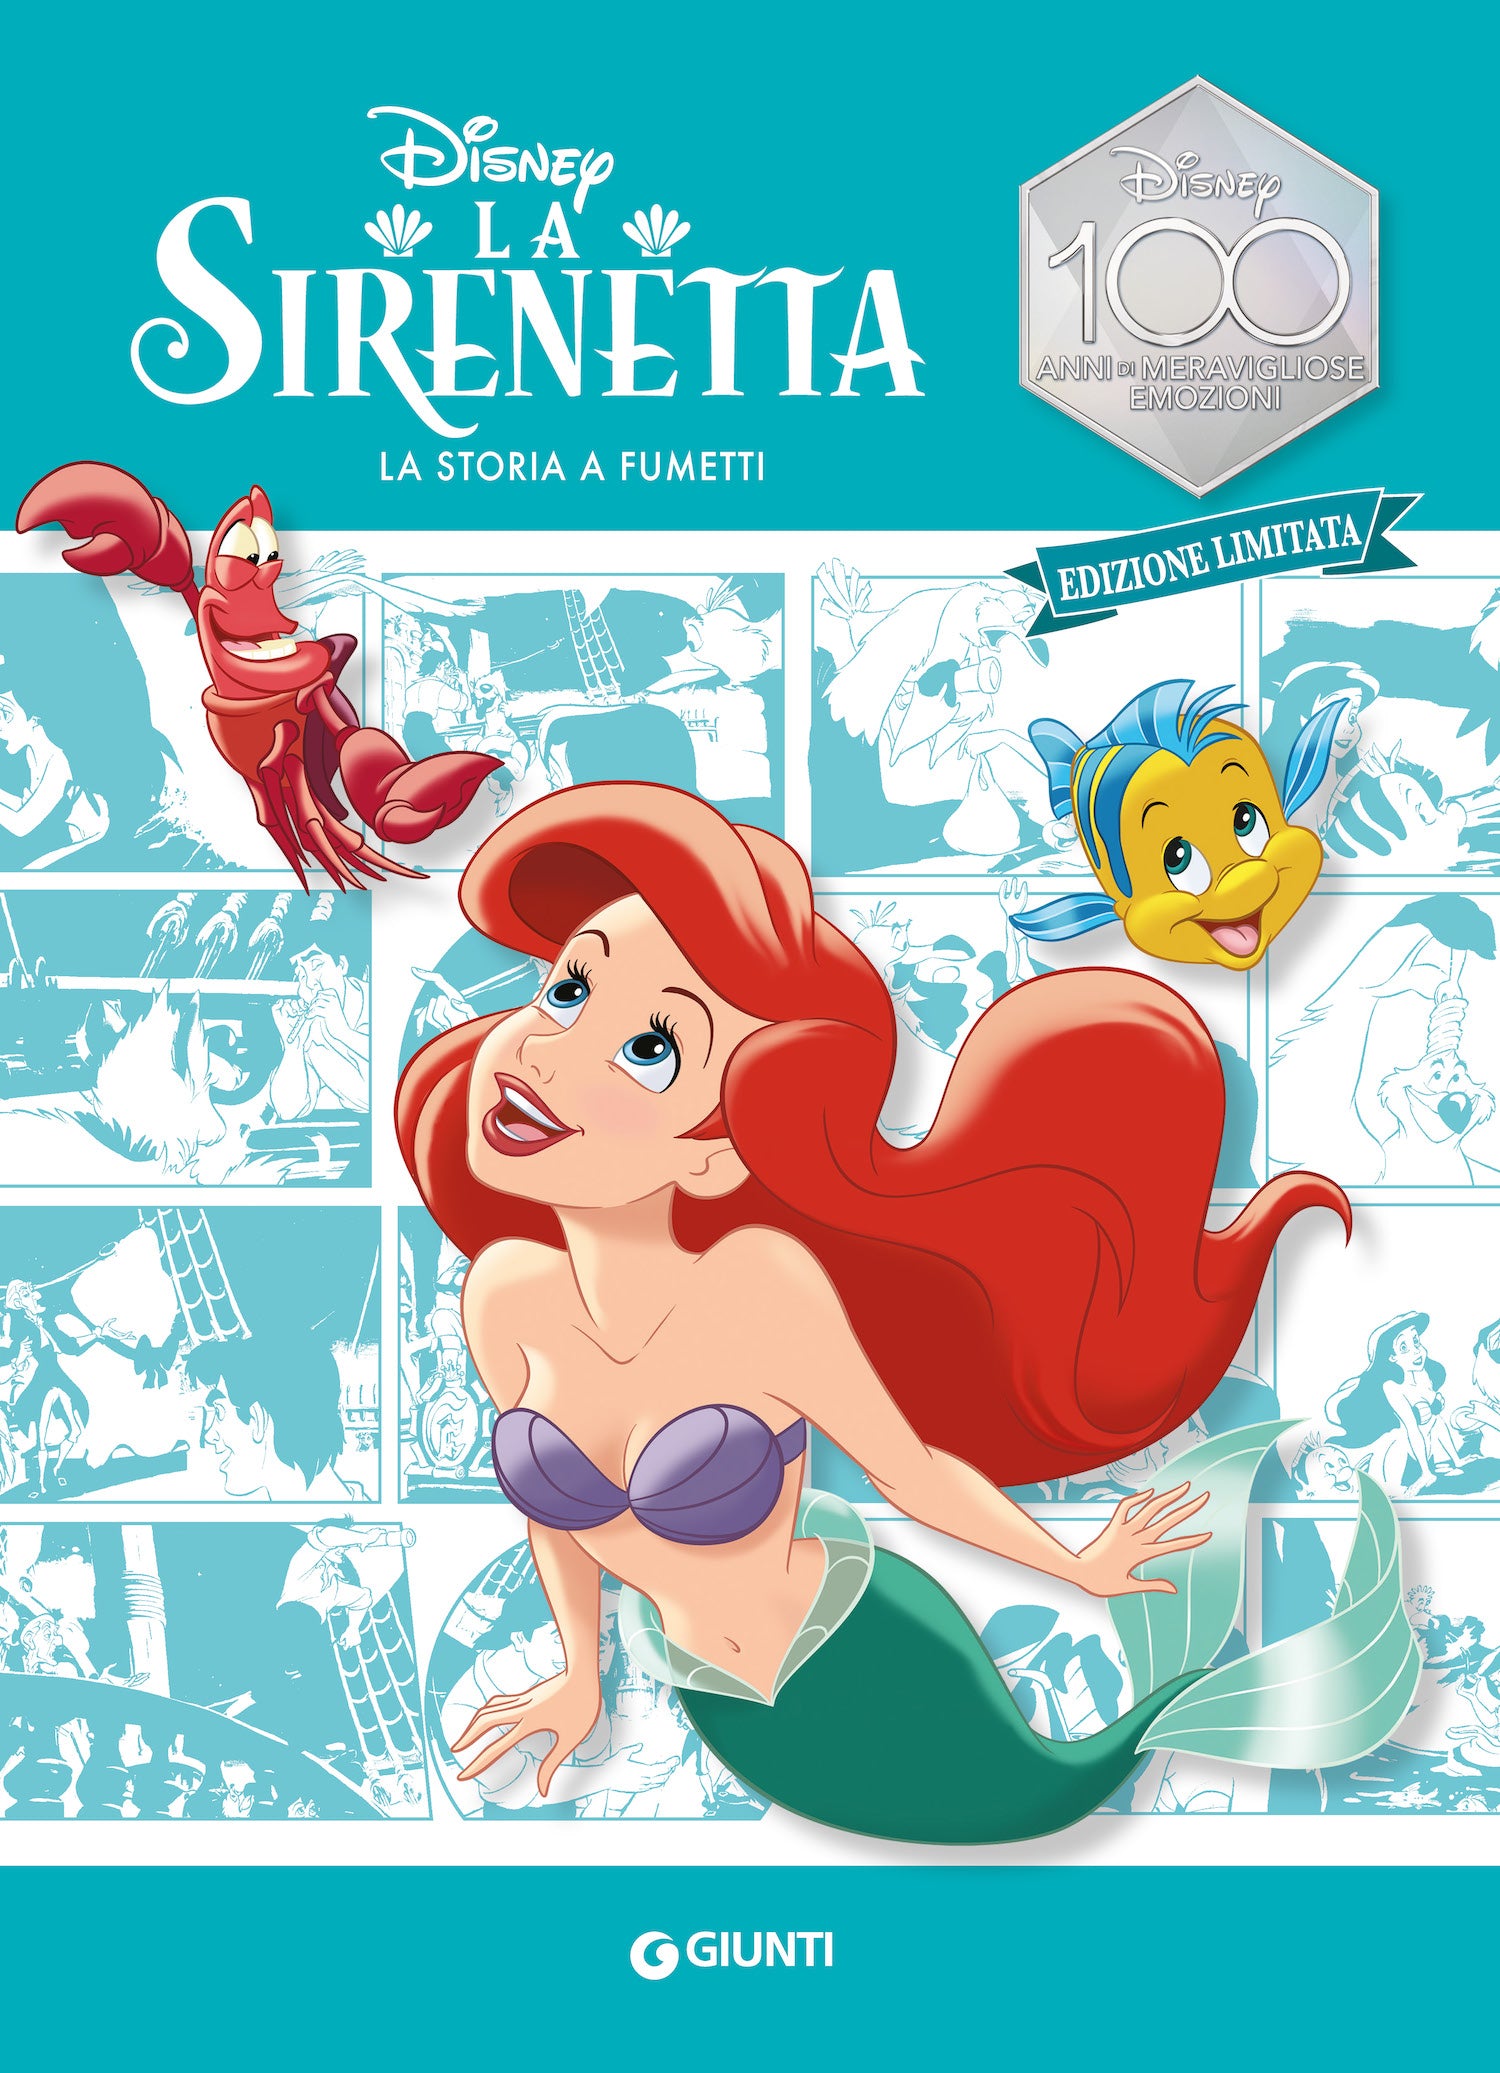 La Sirenetta La storia a fumetti Edizione limitata. Disney 100 Anni di meravigliose emozioni